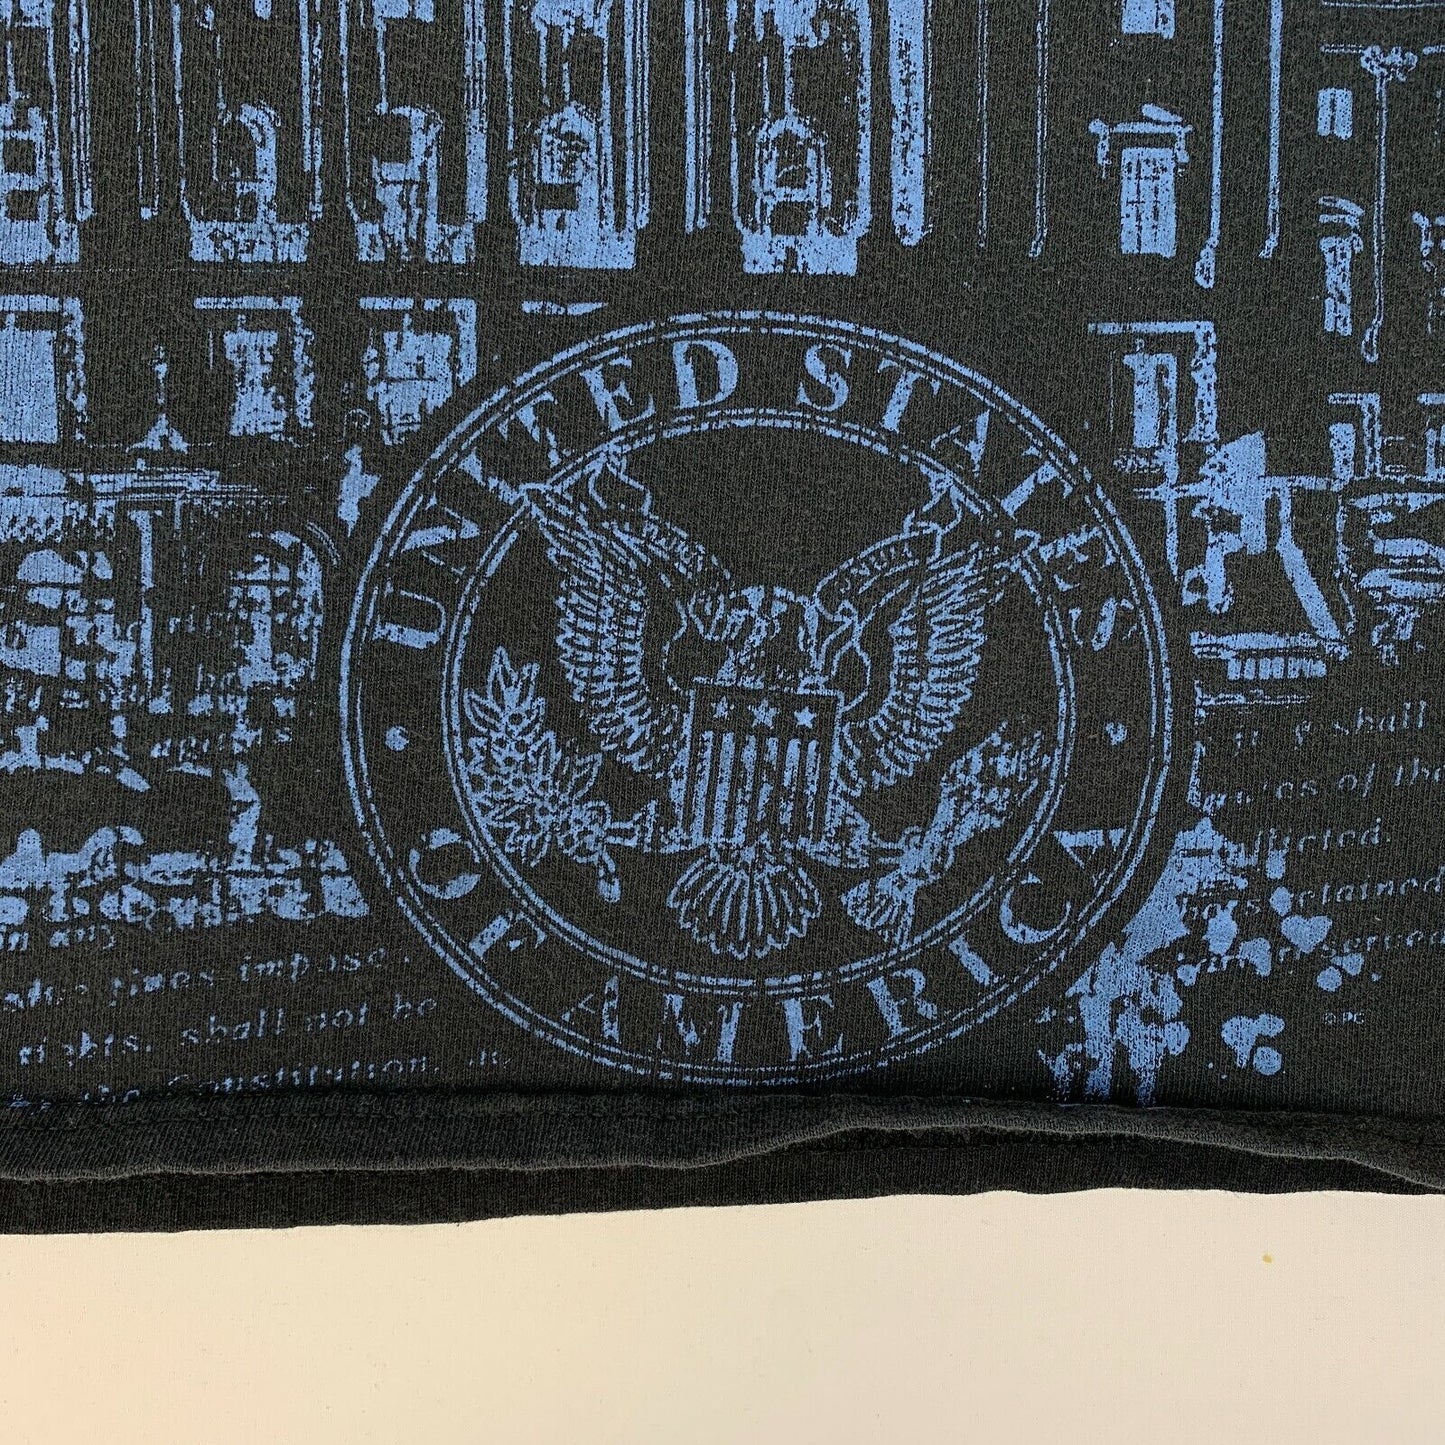 Camiseta de la Capital de las Naciones de Washington DC, camiseta de monumentos de edificios de EE. UU. XL X-Large